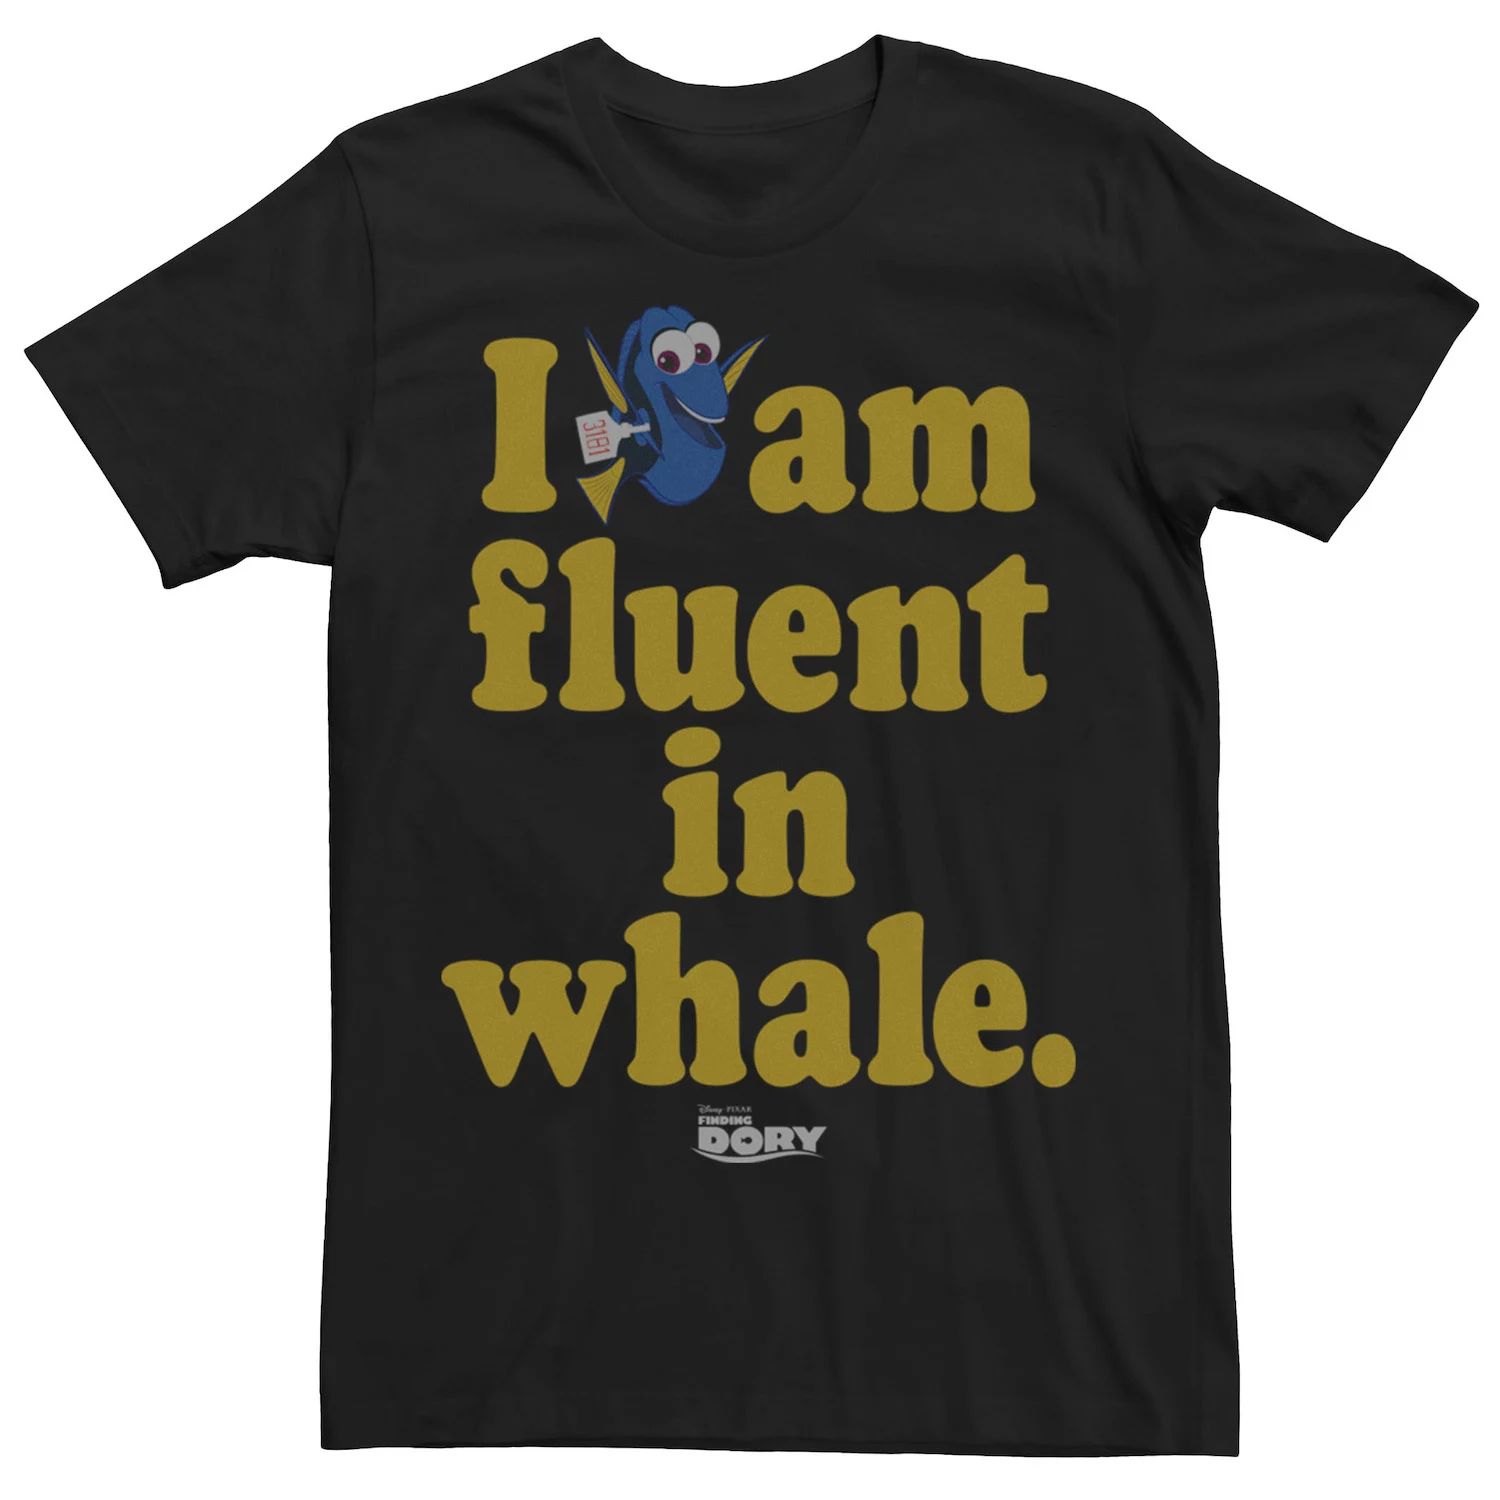 Мужская футболка Finding Dory Fluent в форме кита Disney / Pixar